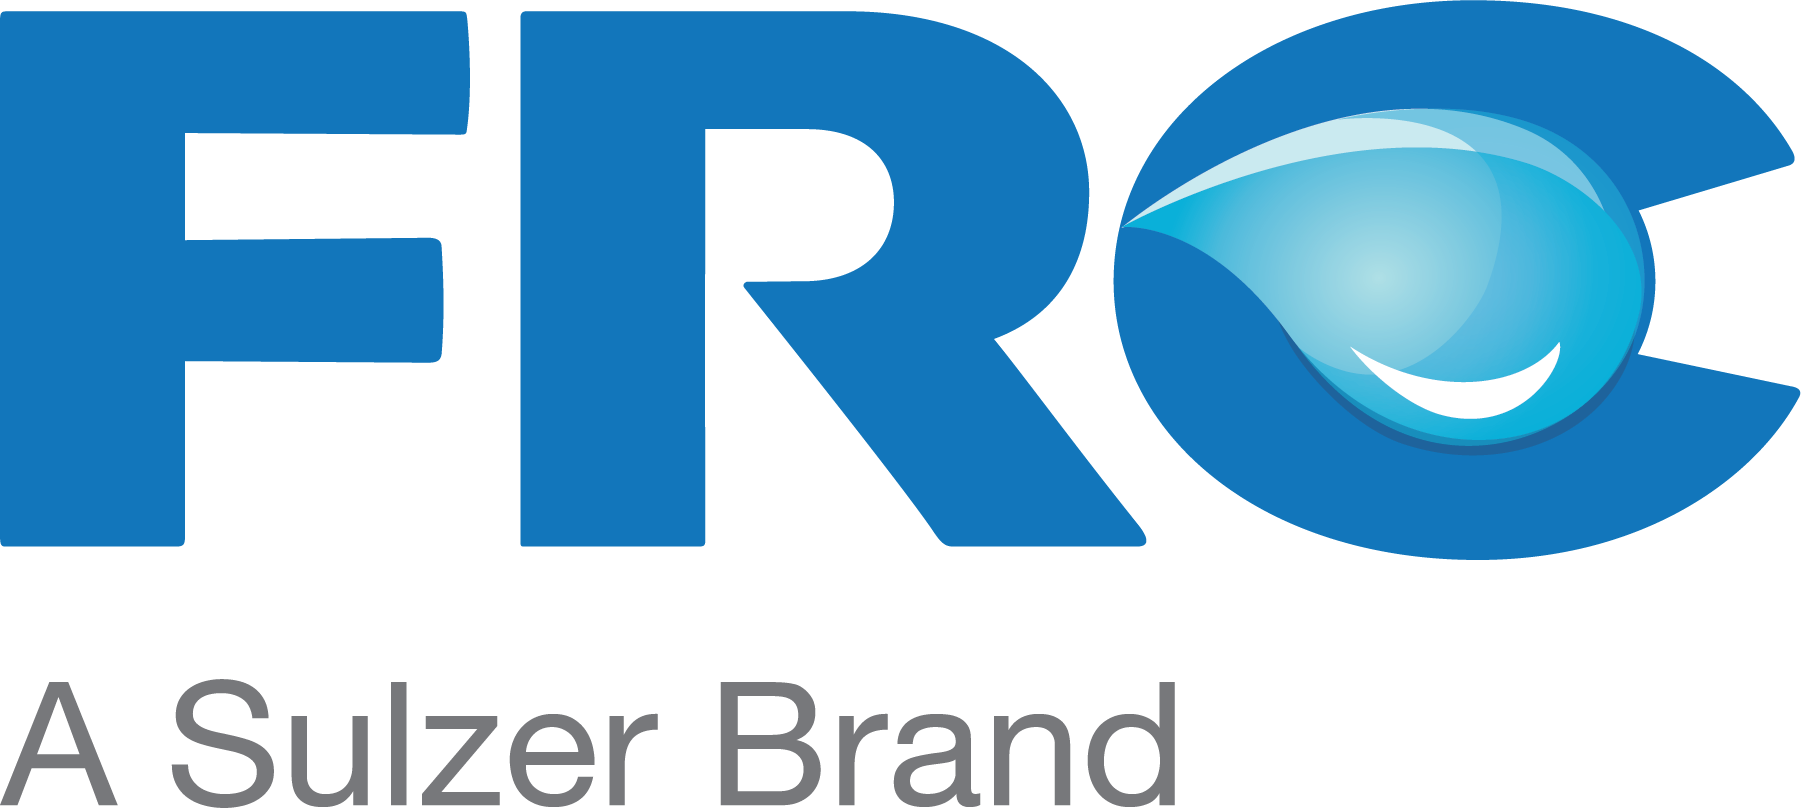 FRC-Logo_wSulzer_4C